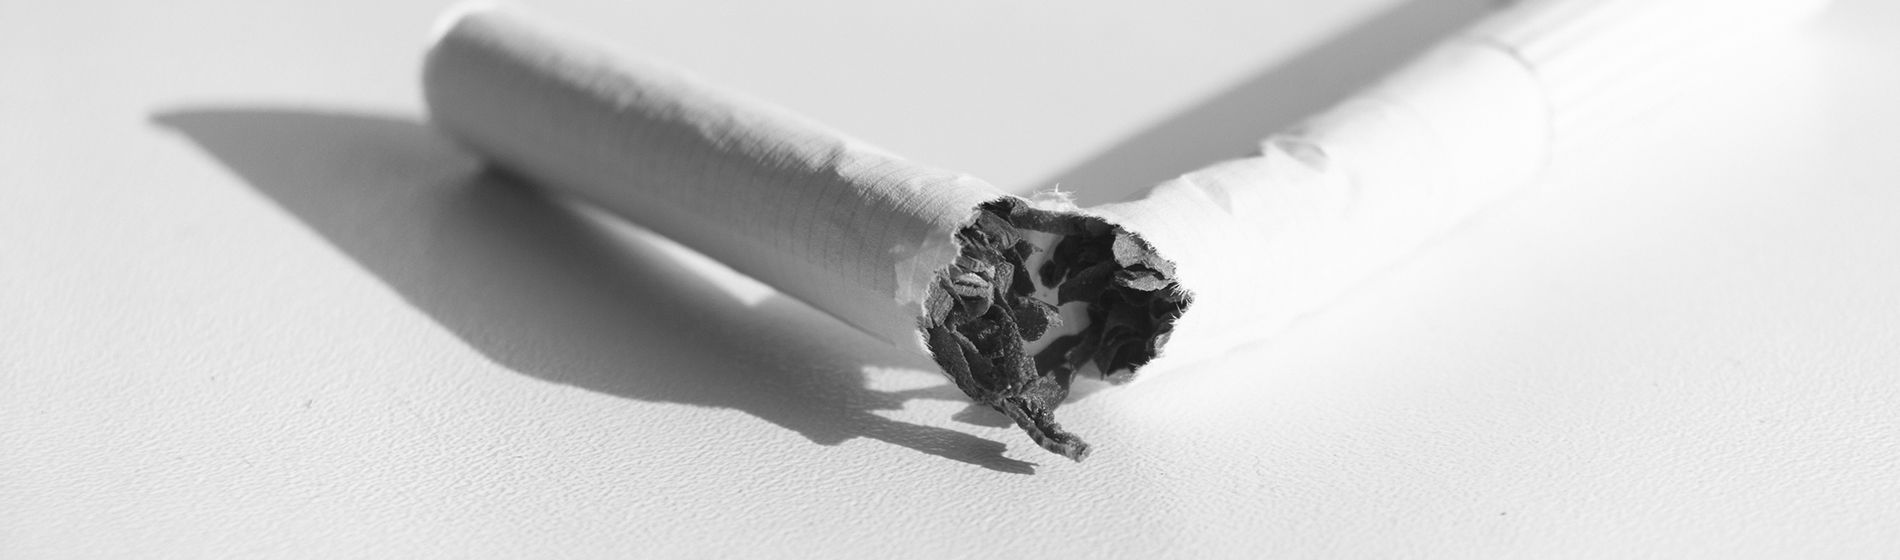 Sevrage arret tabac